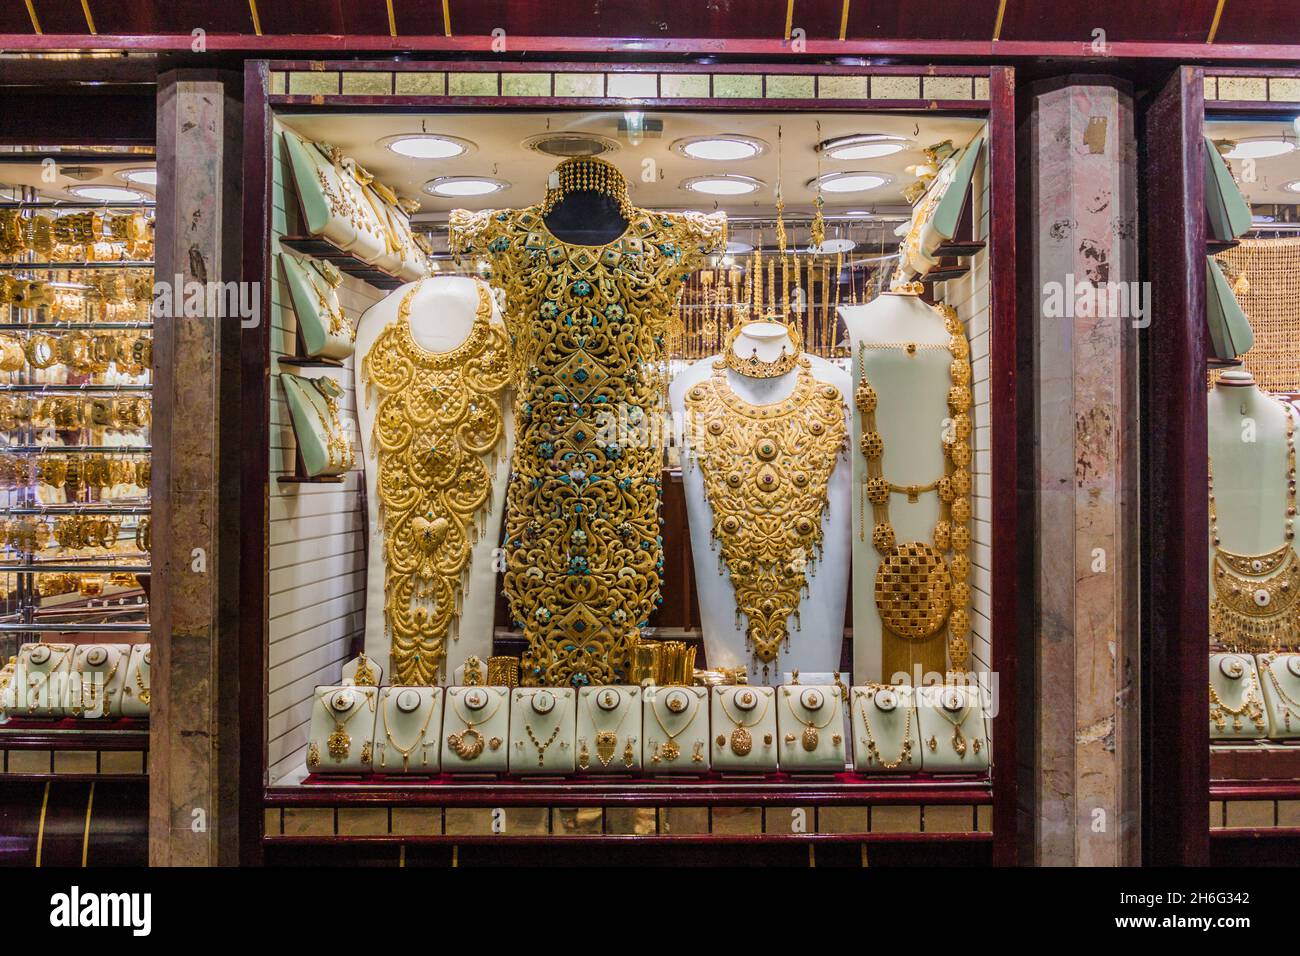 DUBAI, VAE - 10. MÄRZ 2017: Juweliergeschäft im Gold Souq im Viertel Deira in Dubai, Vereinigte Arabische Emirate Stockfoto